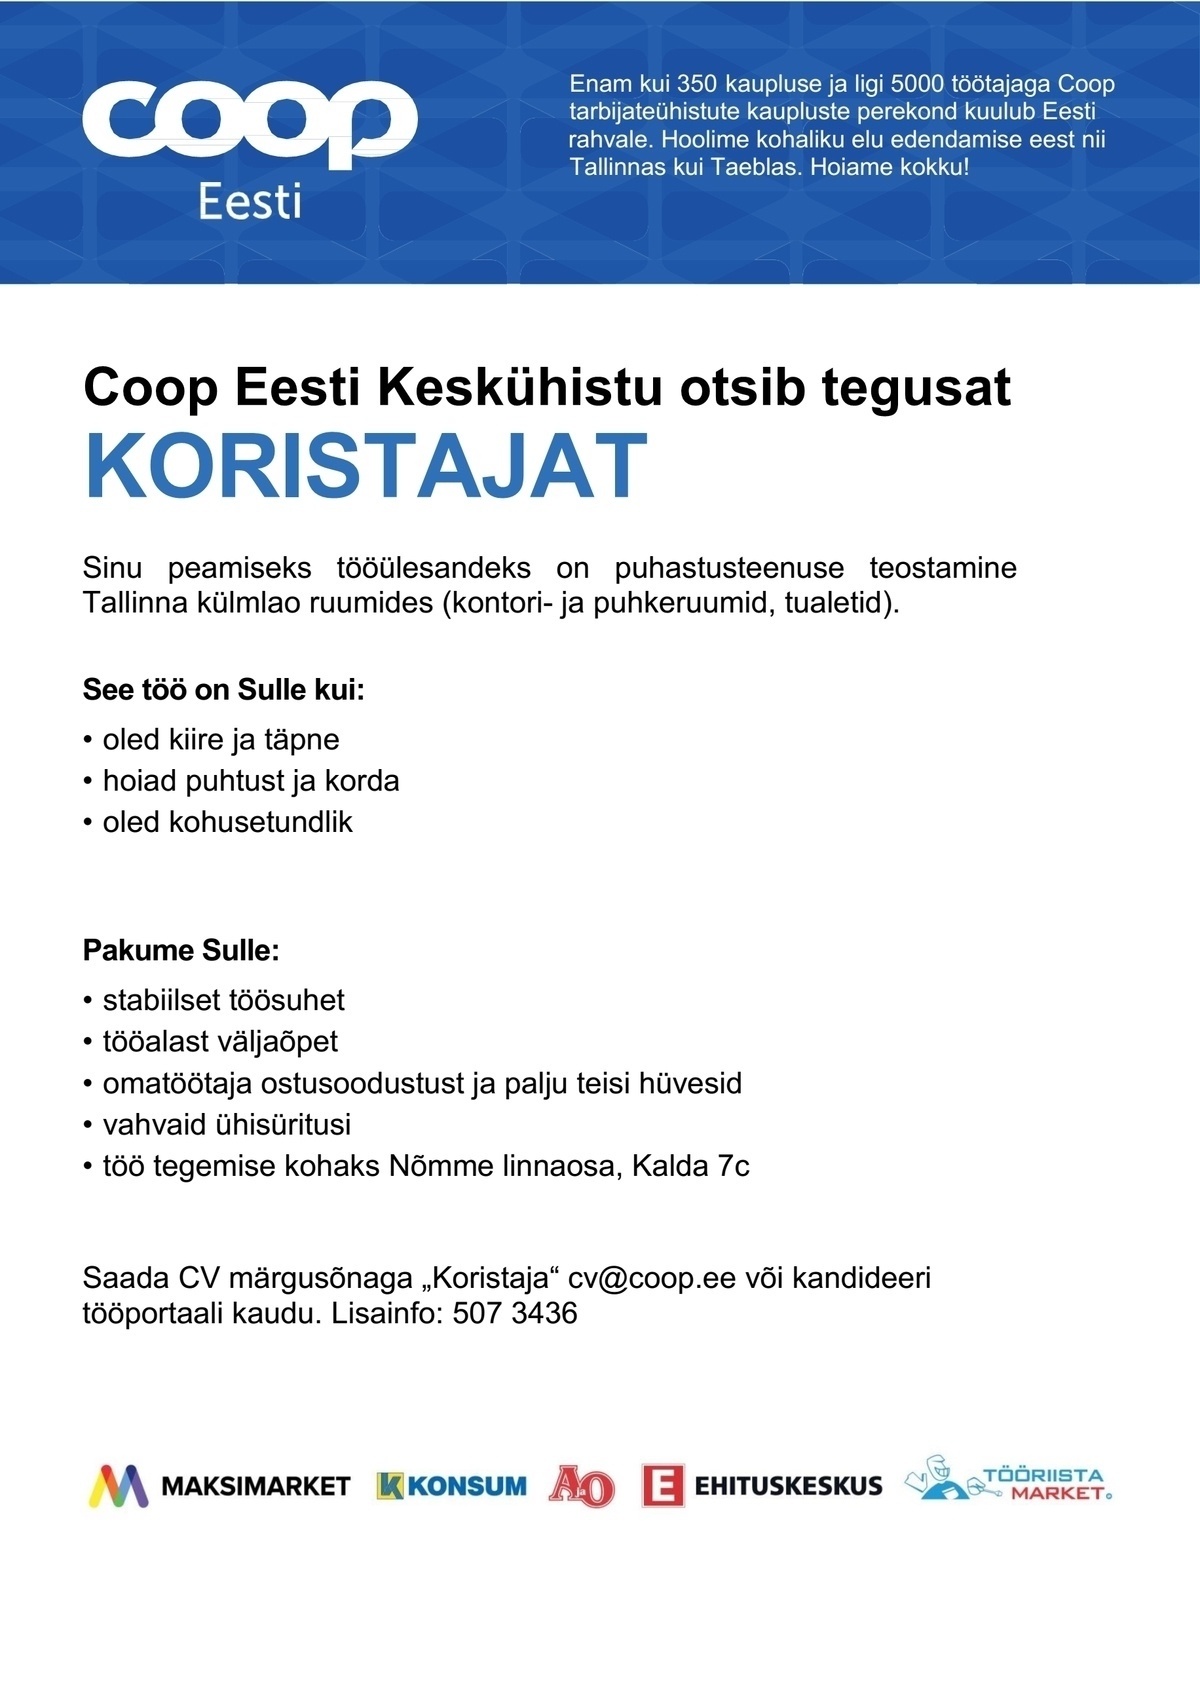 Coop Eesti Keskühistu Koristaja (Tallinna külmladu)